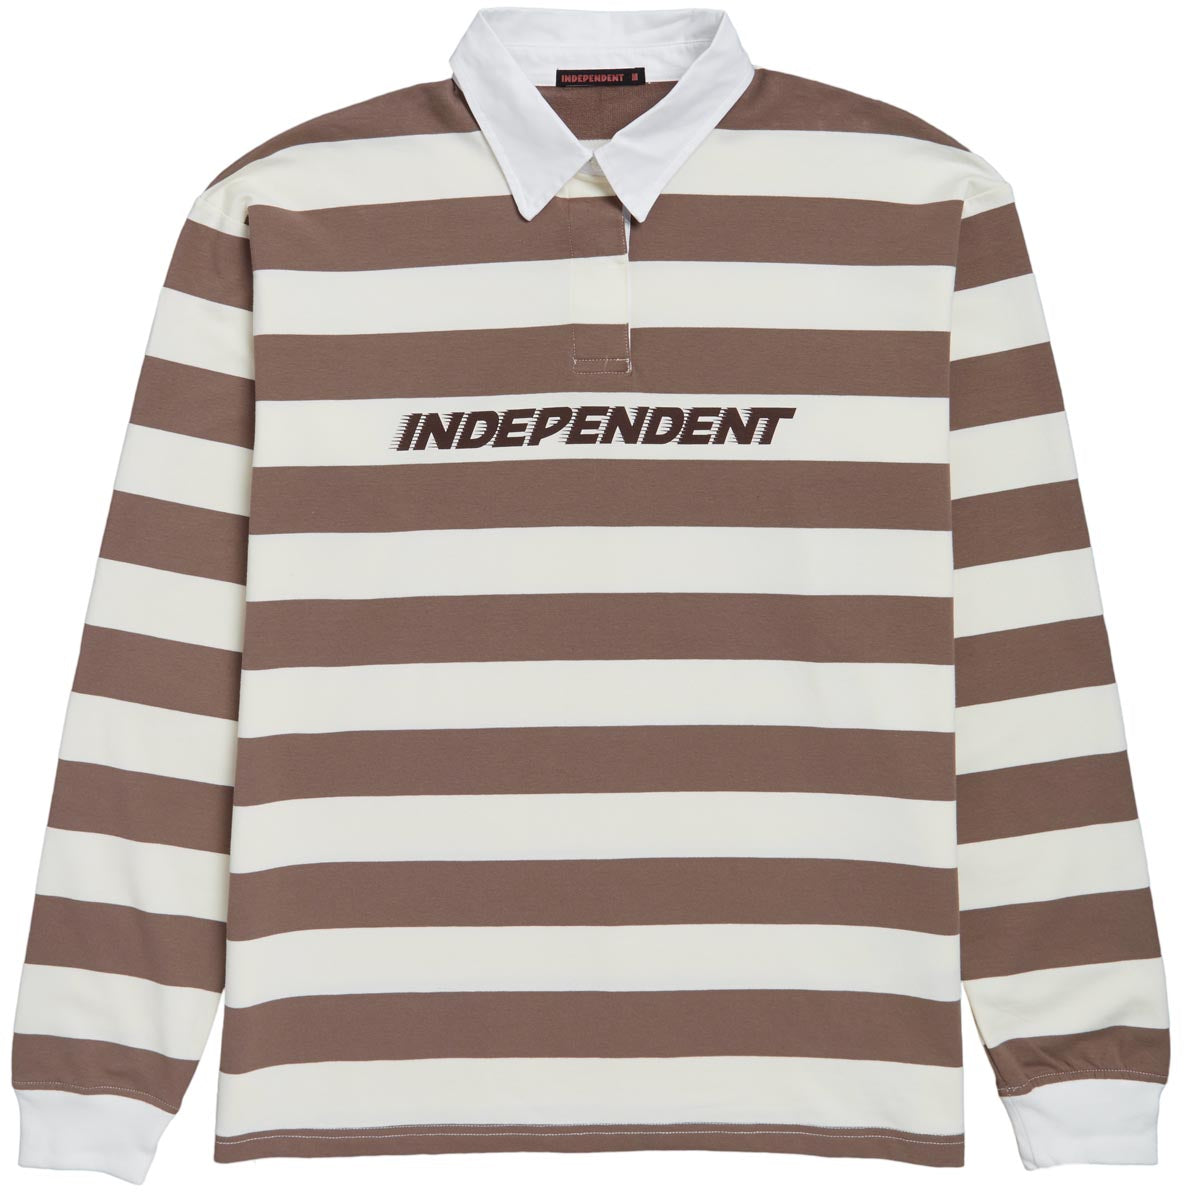 Independent OG Speed Long Sleeve Rugby Shirt - Natural Stripe image 1